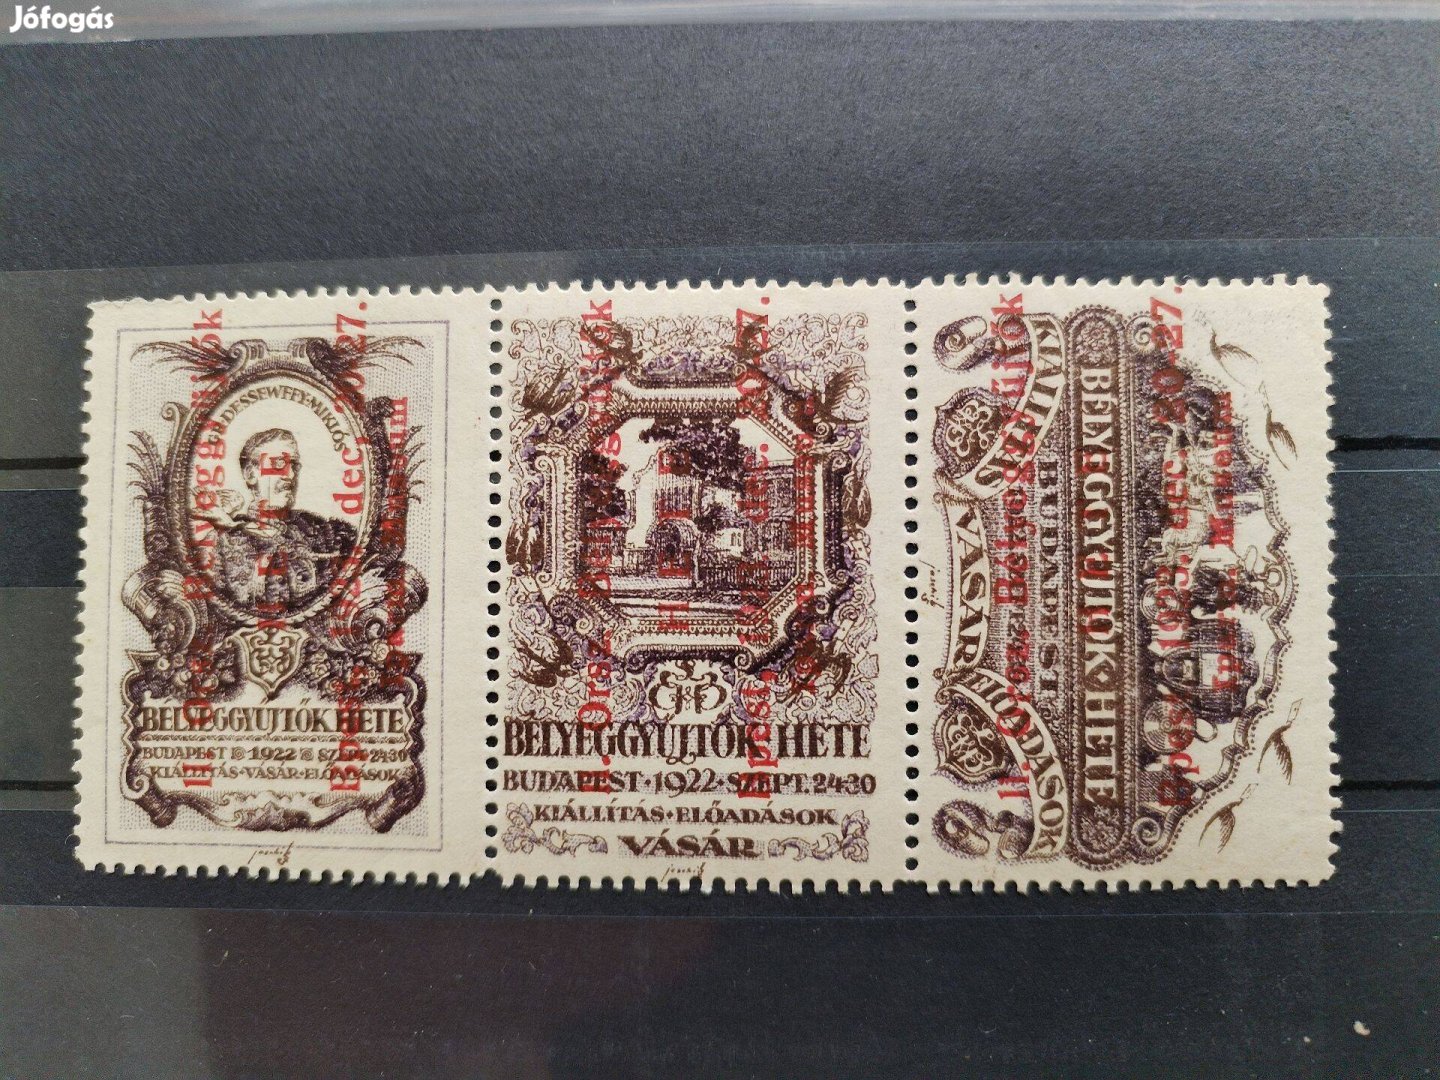 1923-as Budapest bélyeggyűjtő találkozó emlékére emlékbélyeg